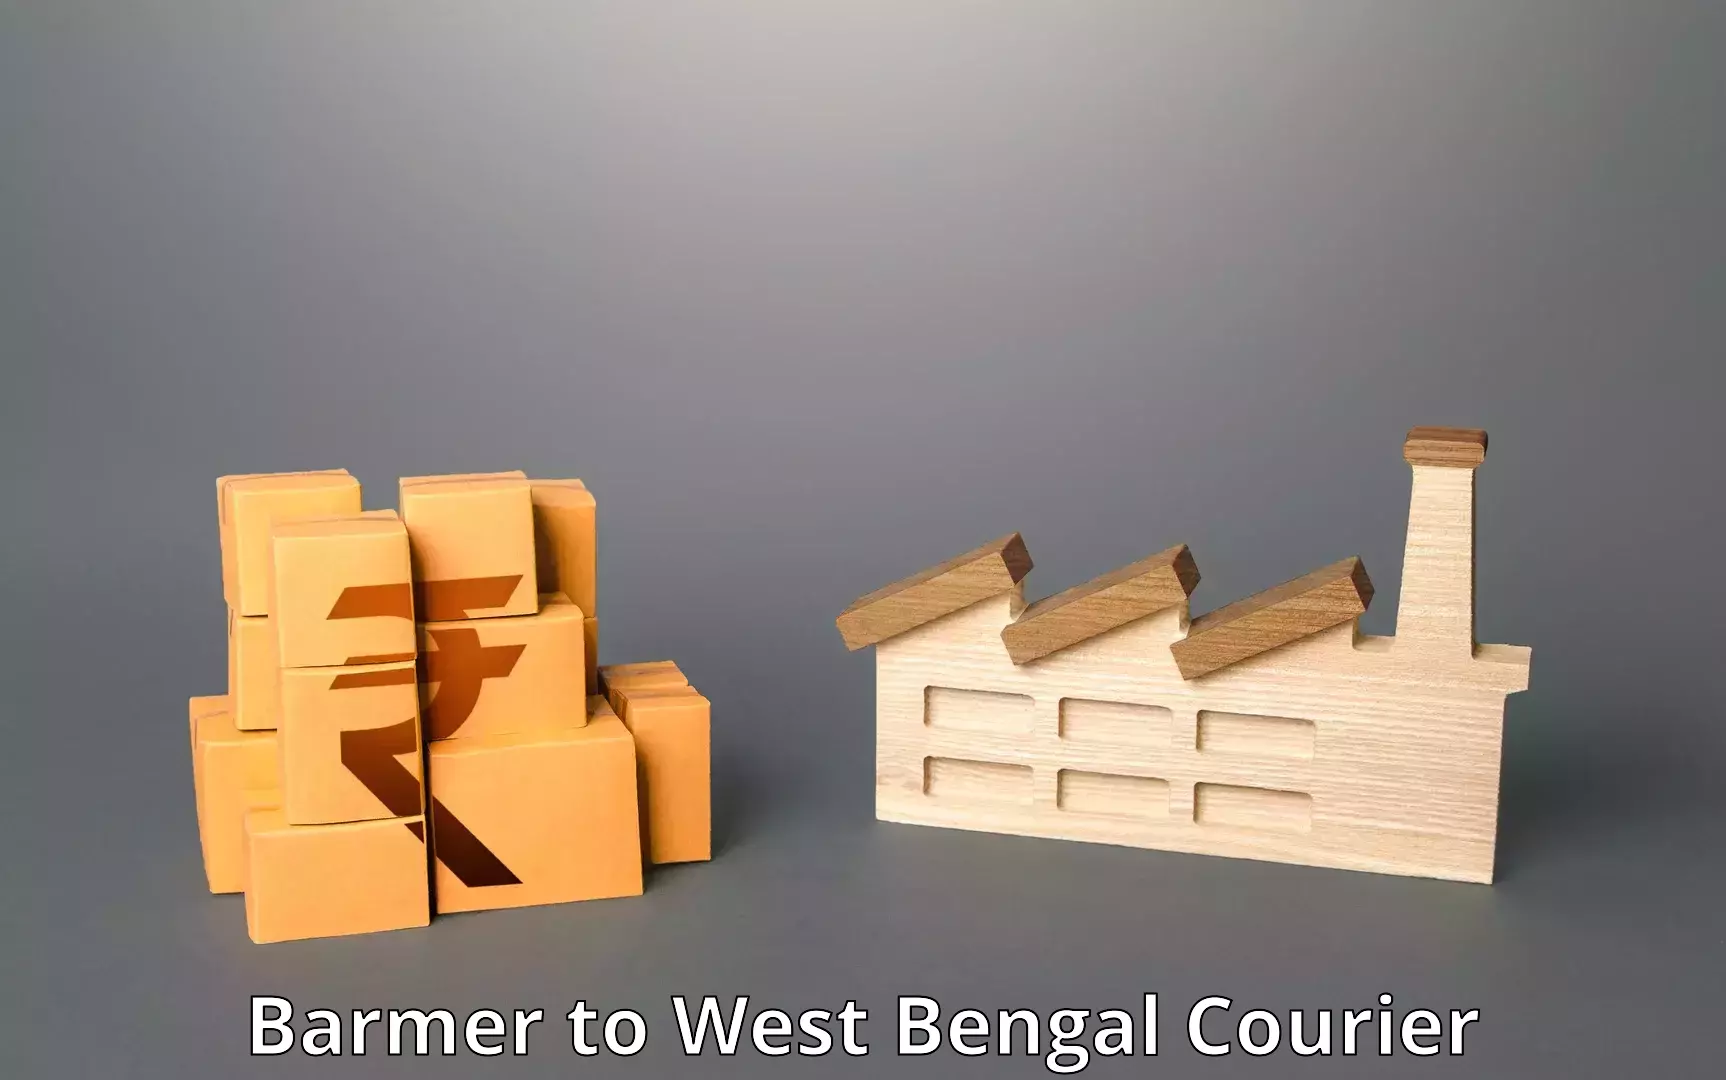 Individual parcel service Barmer to Kolkata Port